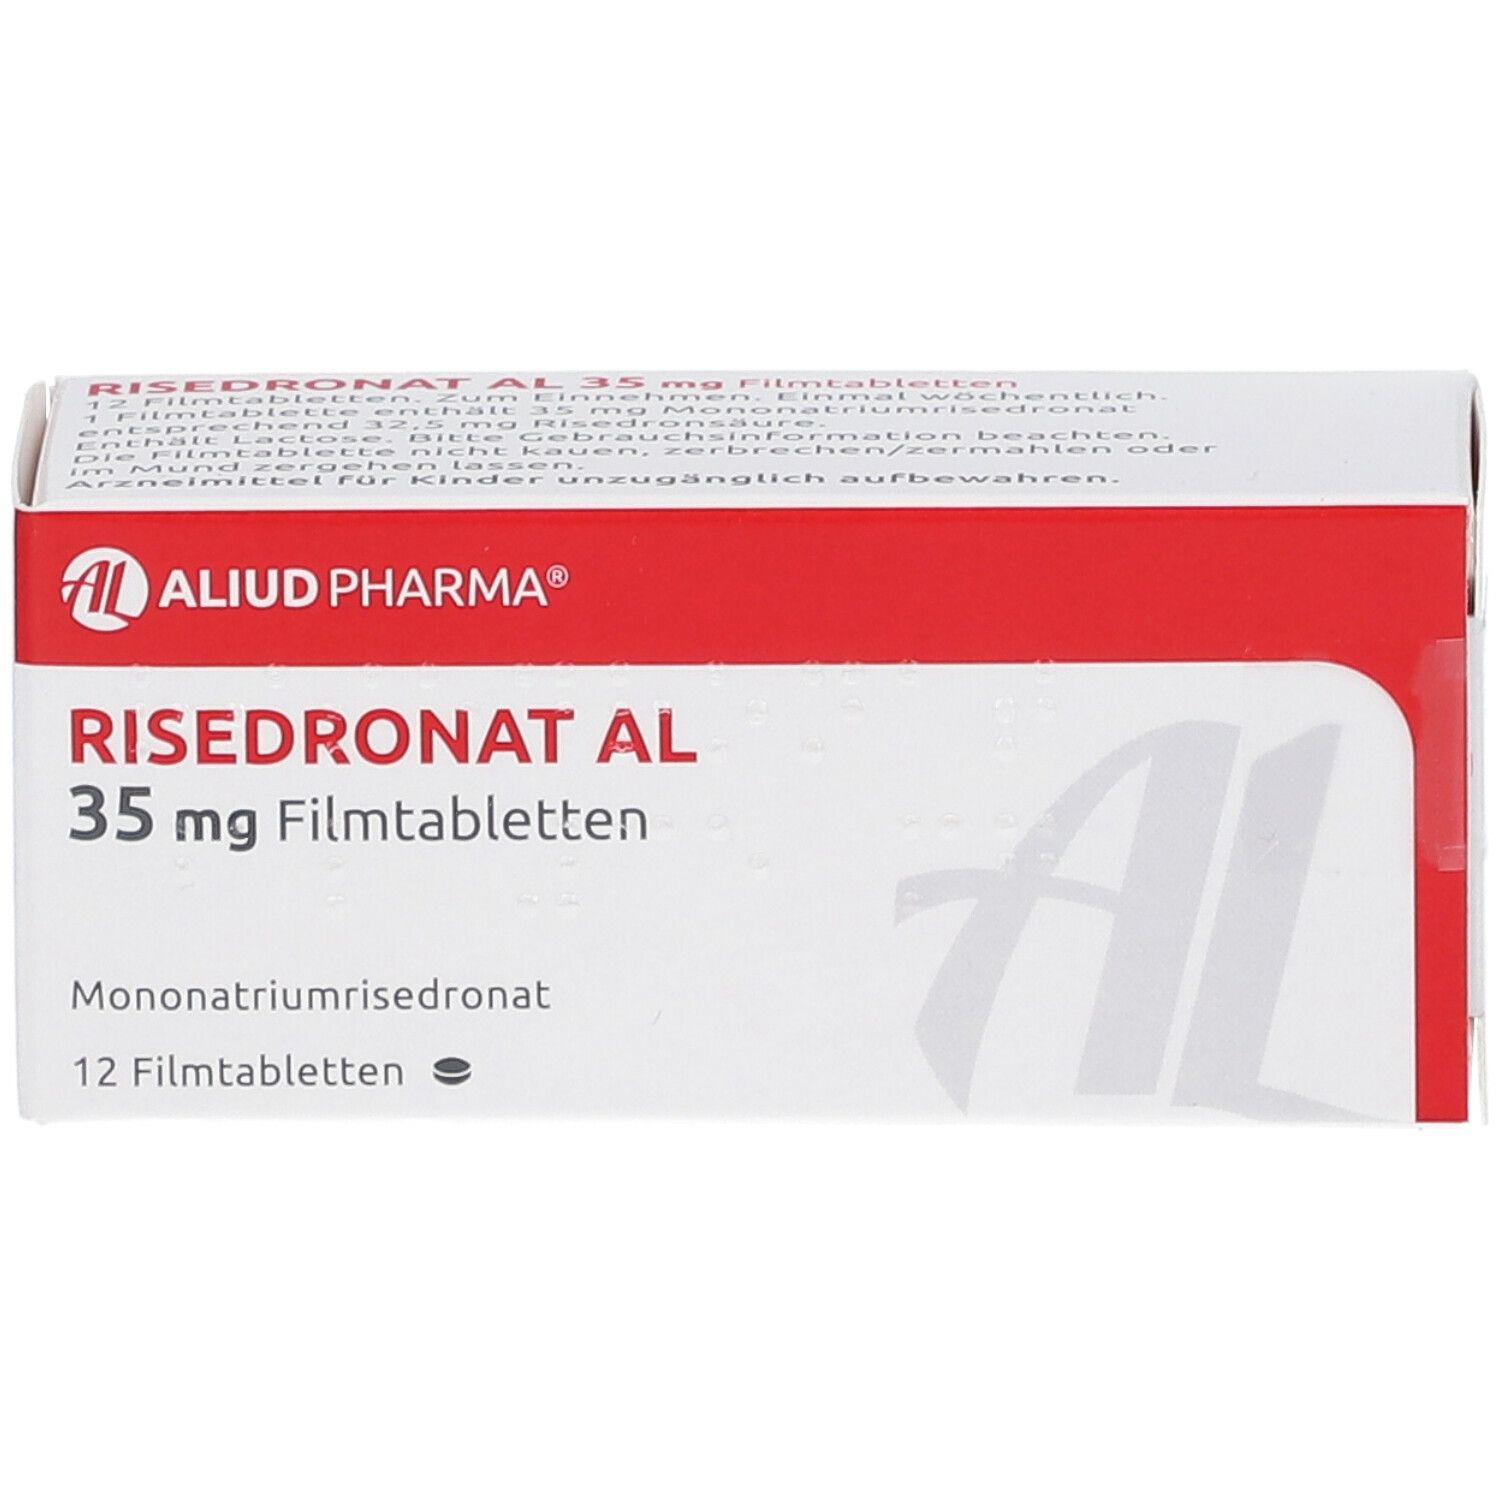 Risedronat AL 35 mg